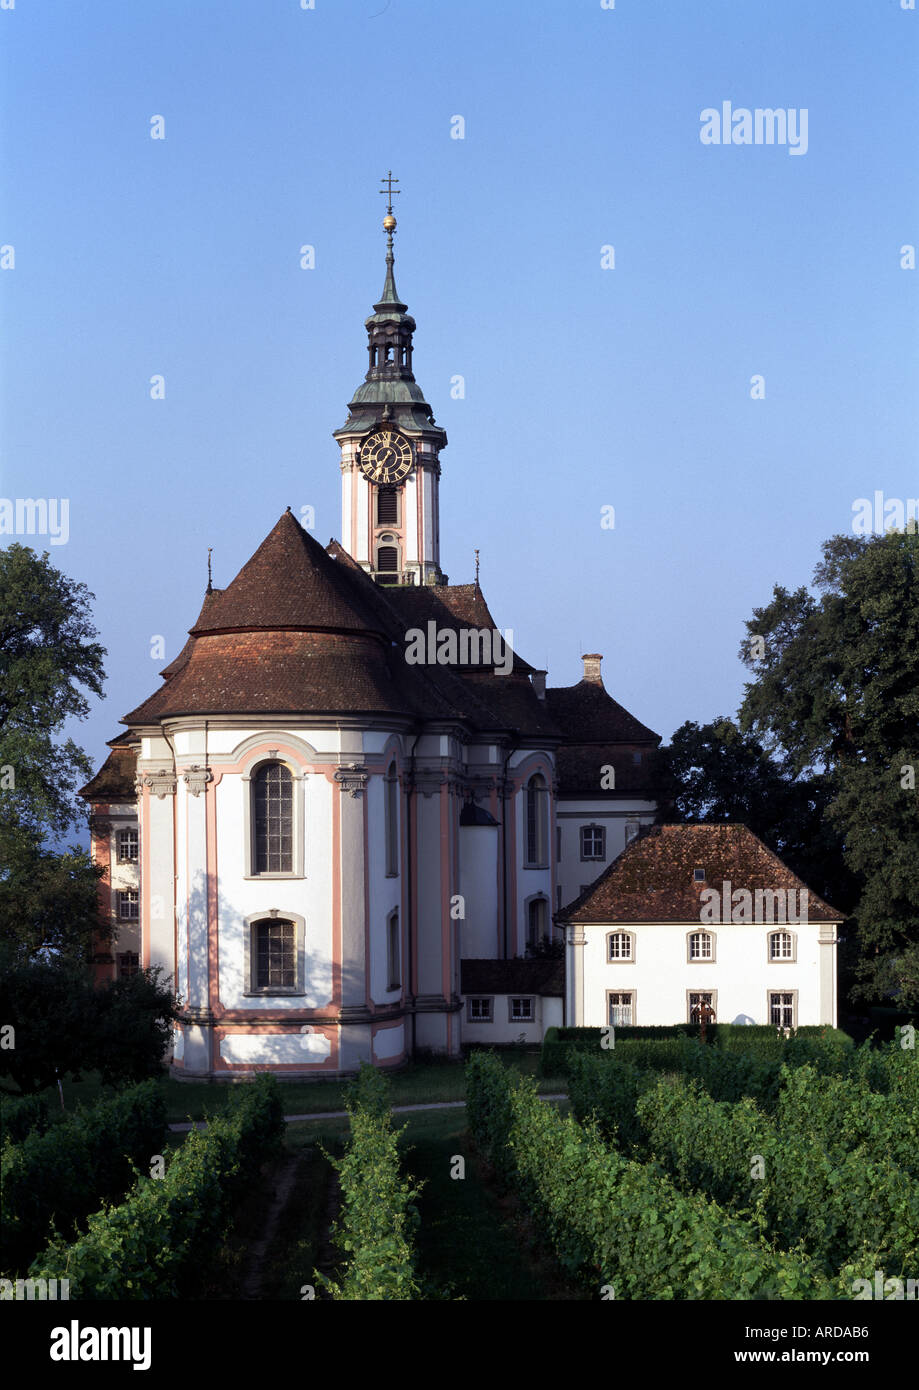 Birnau, Klosterkirche, Blick von Osten Foto Stock